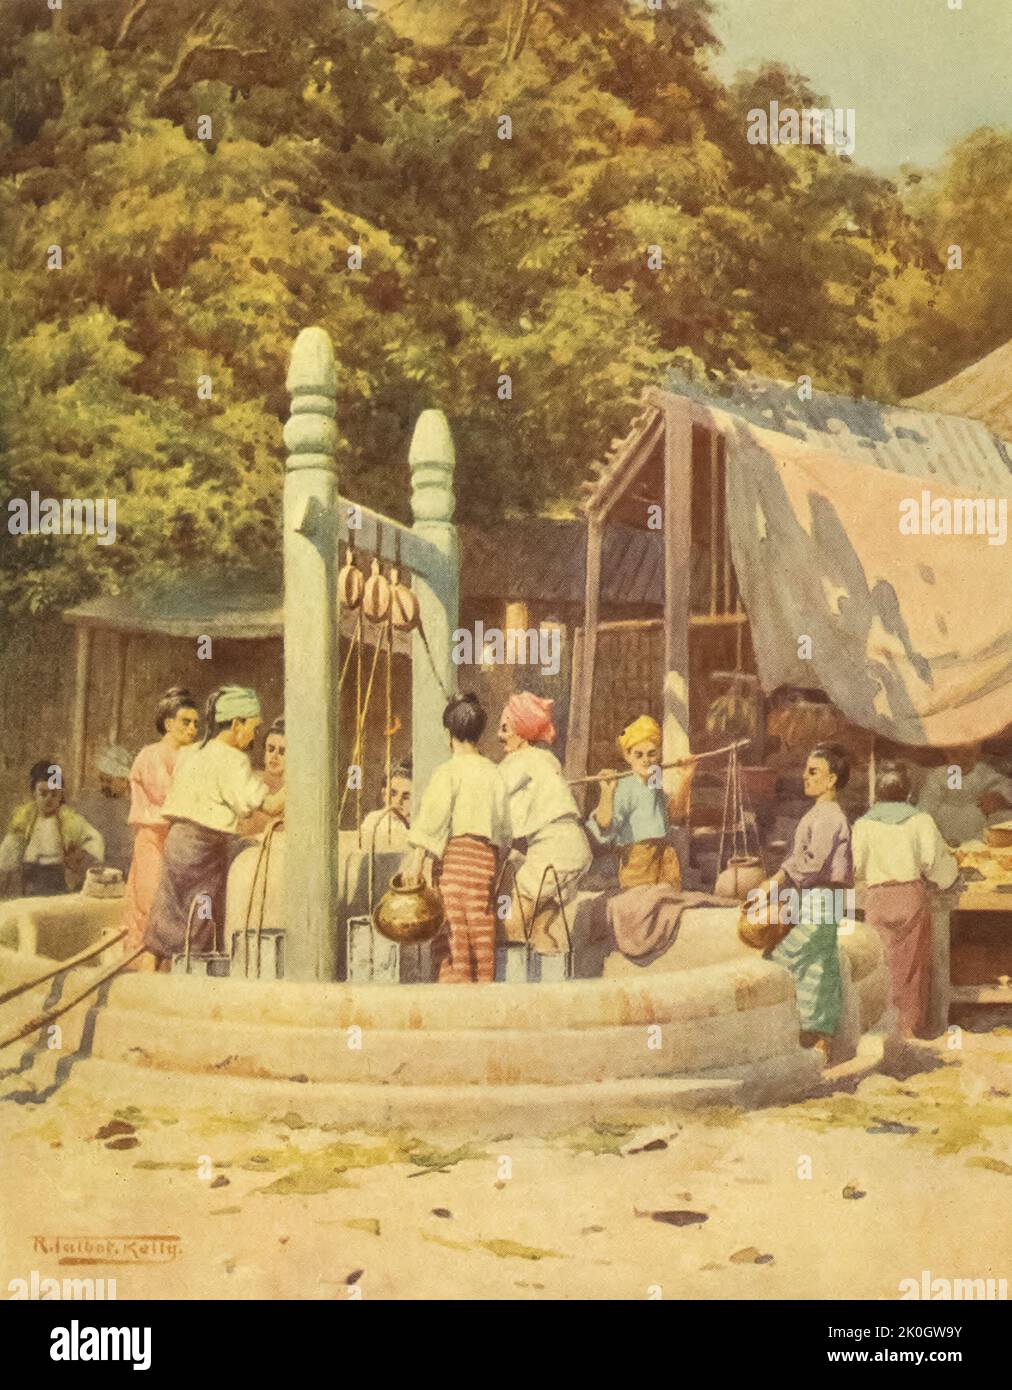 Al pozzo dal libro ' Burma ' dipinto e descritto da Kelly, R. Talbot (Robert Talbot), 1861-1934 Data di pubblicazione 1905 Editore Londra : Adam e Charles Black Foto Stock